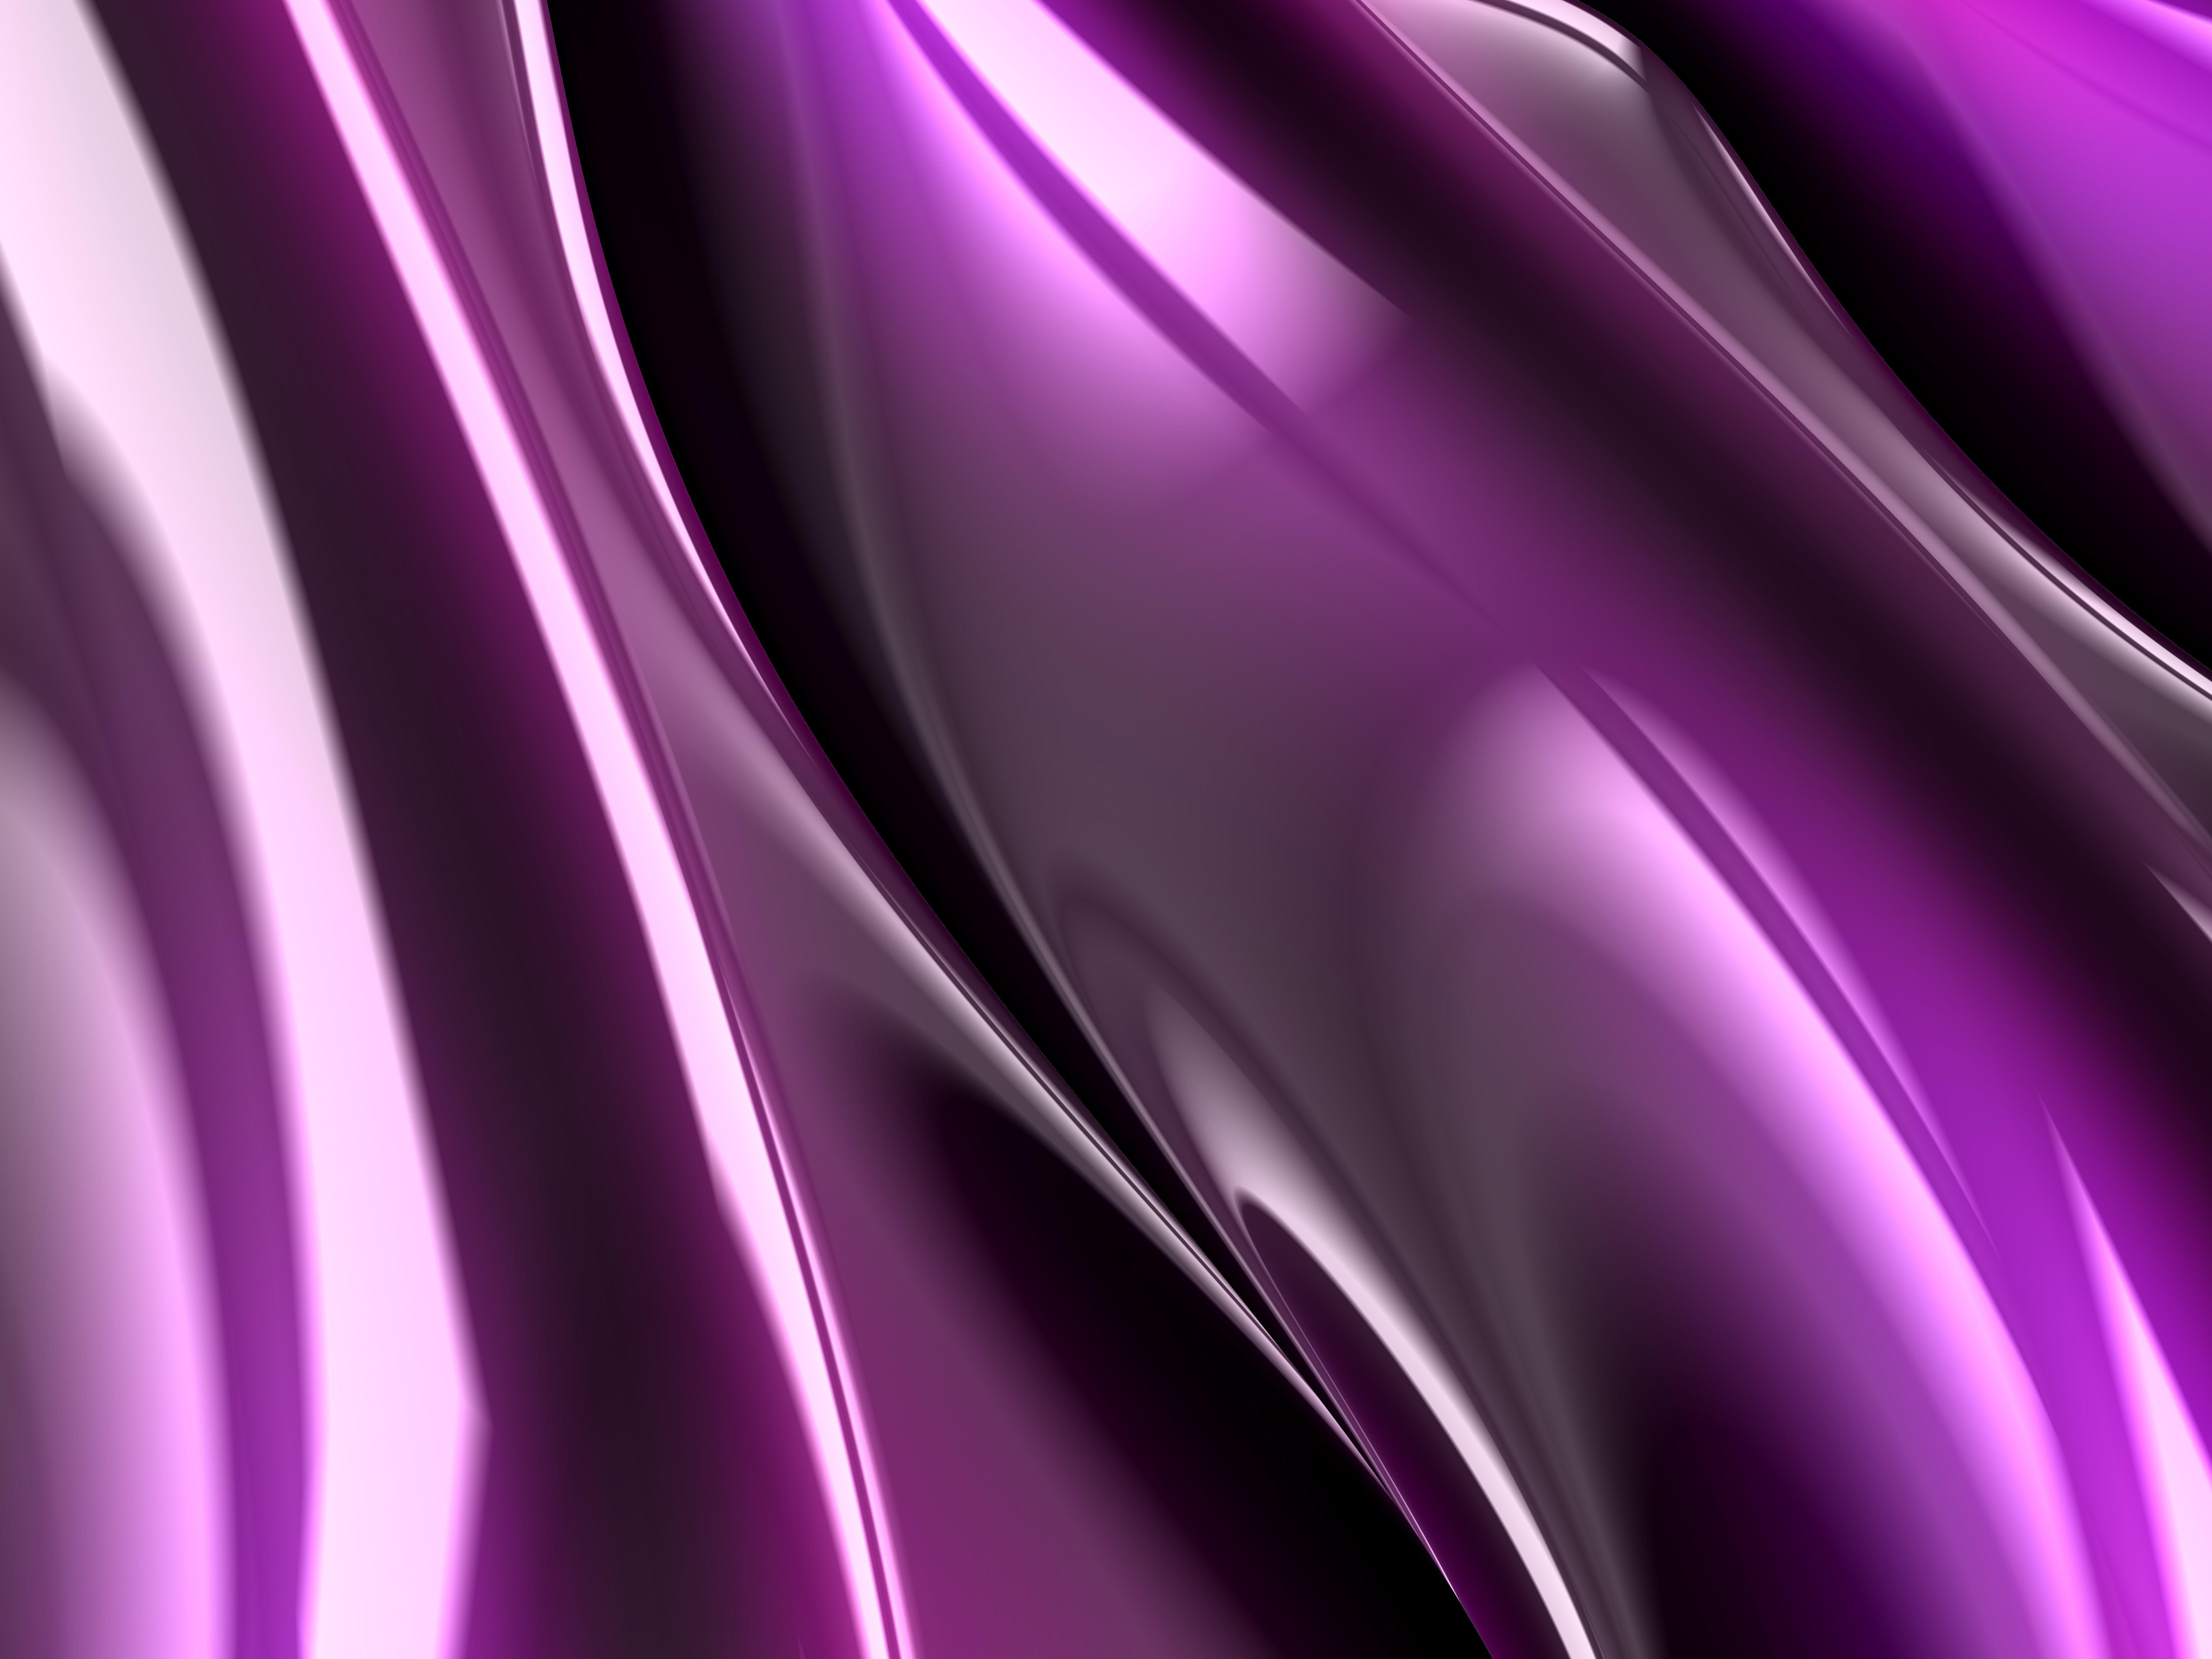  8K  Purple  Wallpapers  Top Free 8K  Purple  Backgrounds 